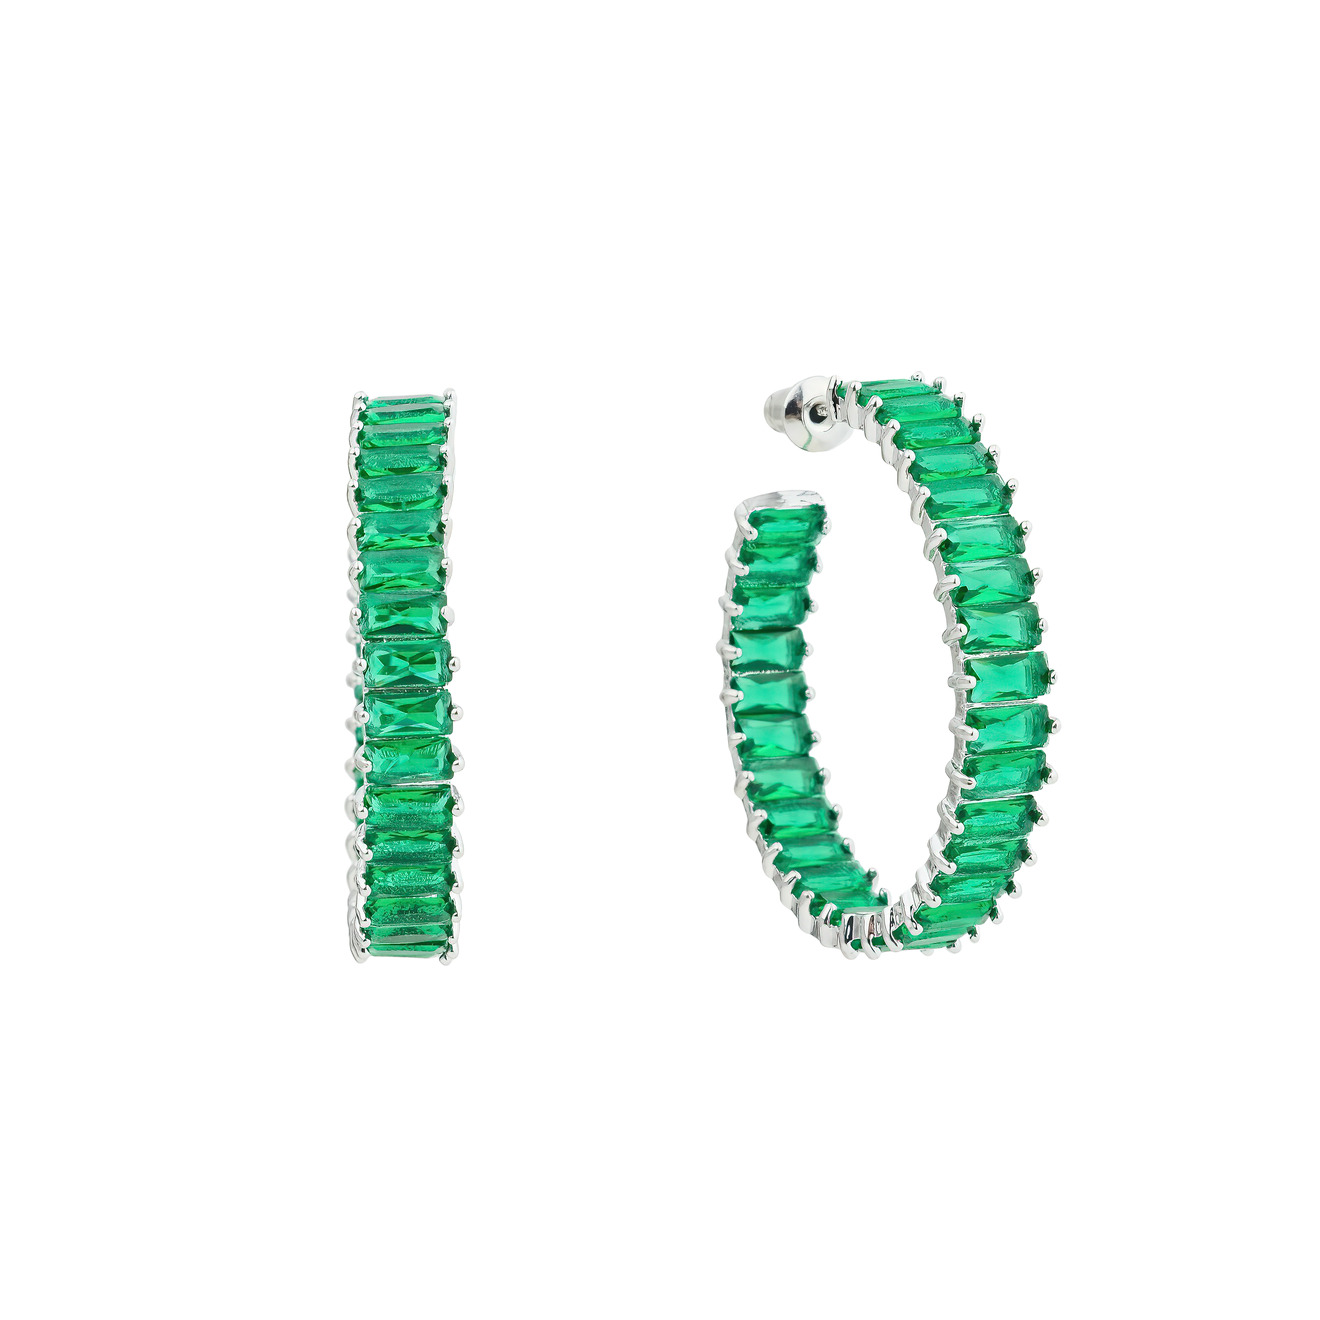 Herald Percy Серьги-кольца с зелеными кристаллами herald percy серебристый браслет с большими зелеными кристаллами